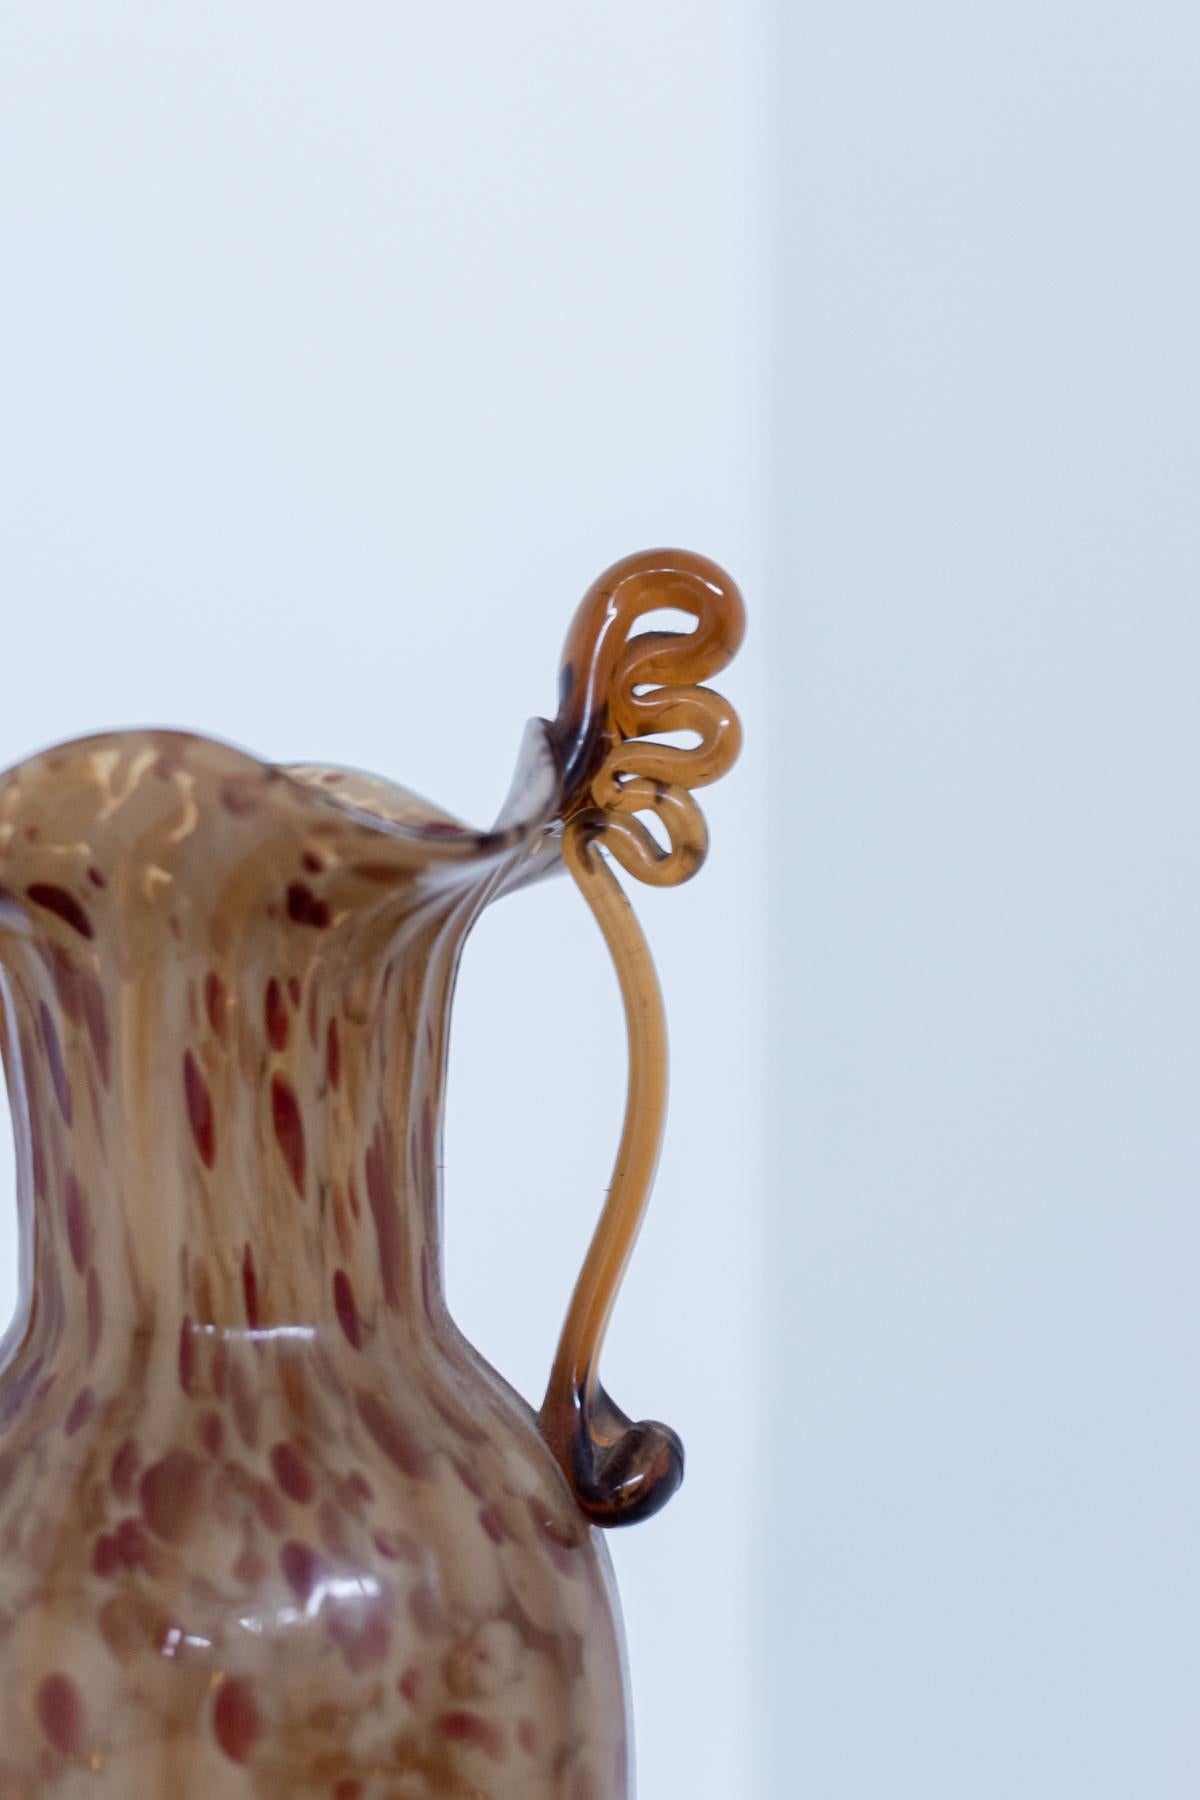 Wunderschöne Vase aus Murano-Glas, entworfen von Fratelli Toso in den 1920er Jahren. 
Das geblasene Glas ist bernsteinfarben mit dunkelroten Nuancen, eine besondere Kunstfertigkeit des Murano-Glases.
Die Vase hat weiche und geschwungene Formen,